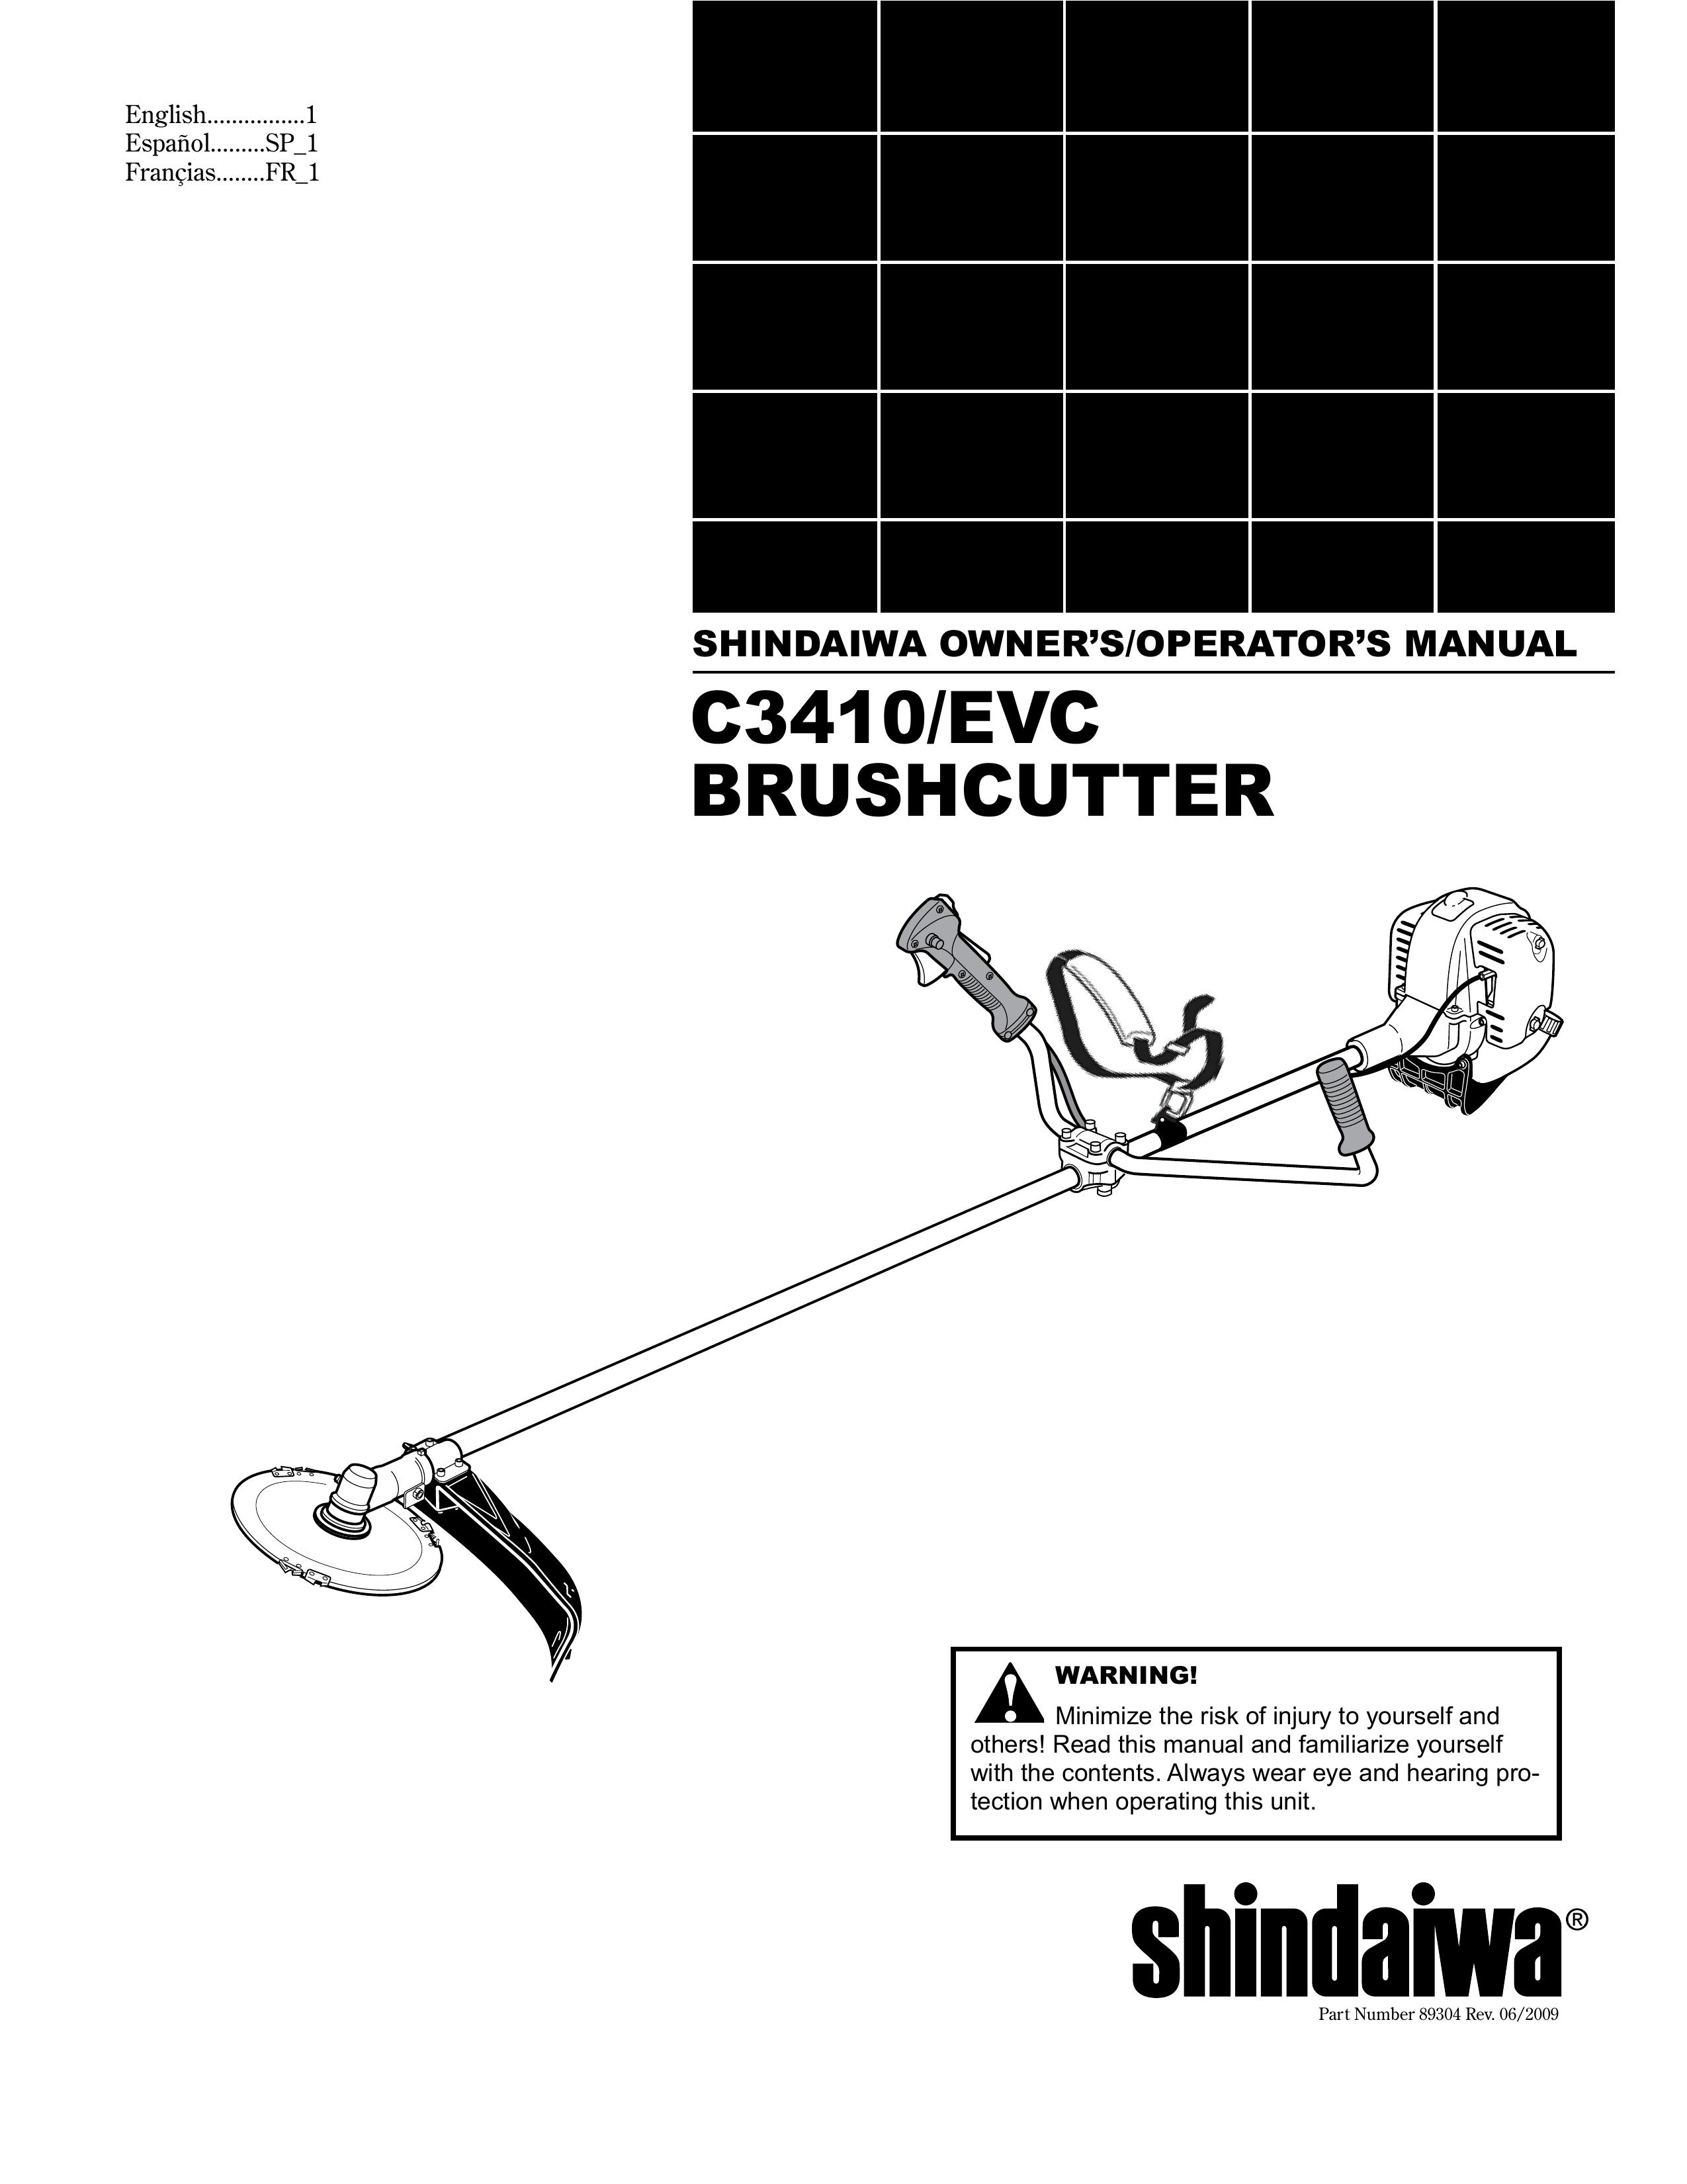 Shindaiwa 89304 Brush Cutter User Manual